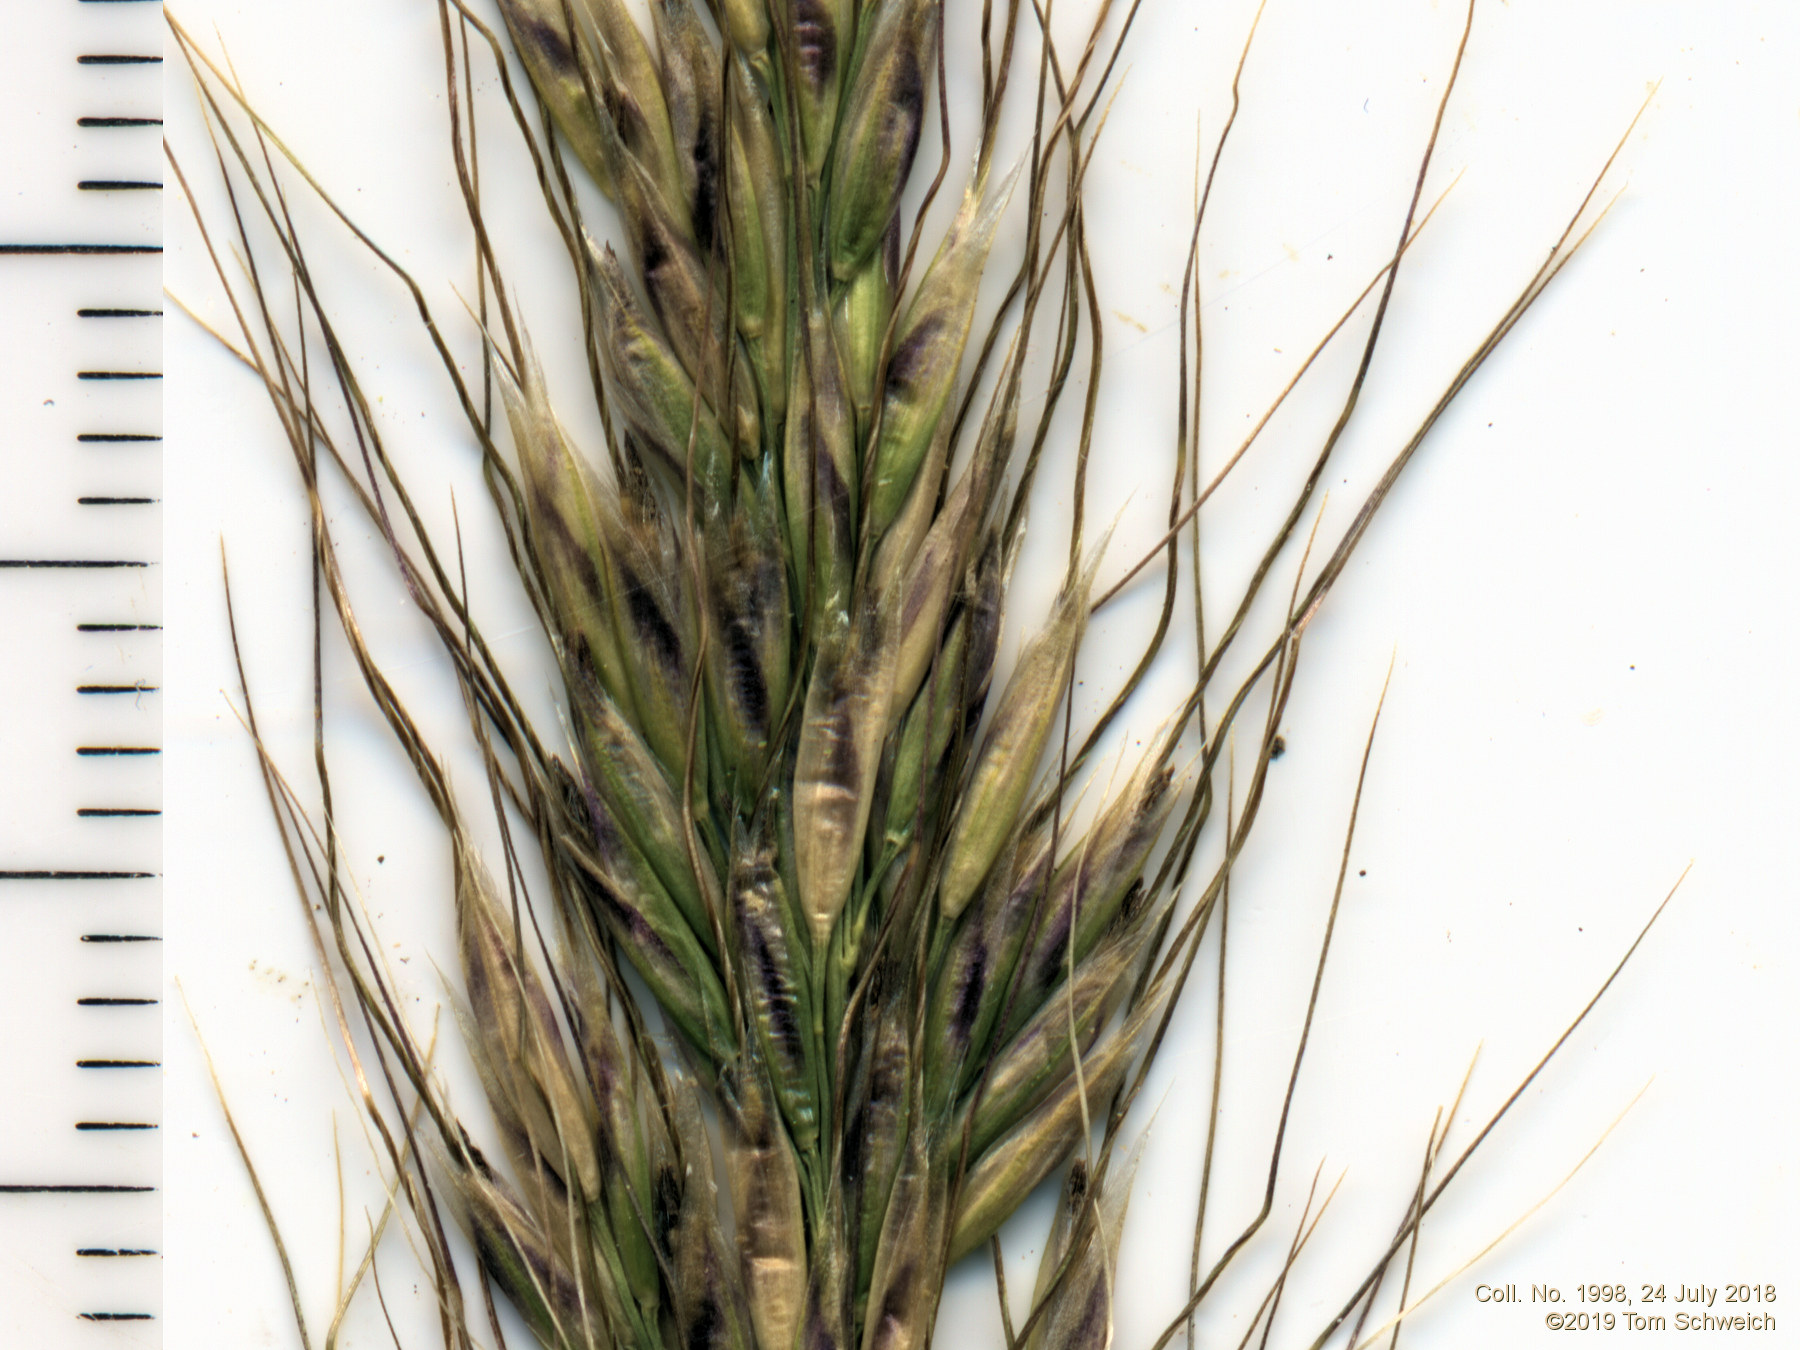 Poaceae Eriocoma lettermanii